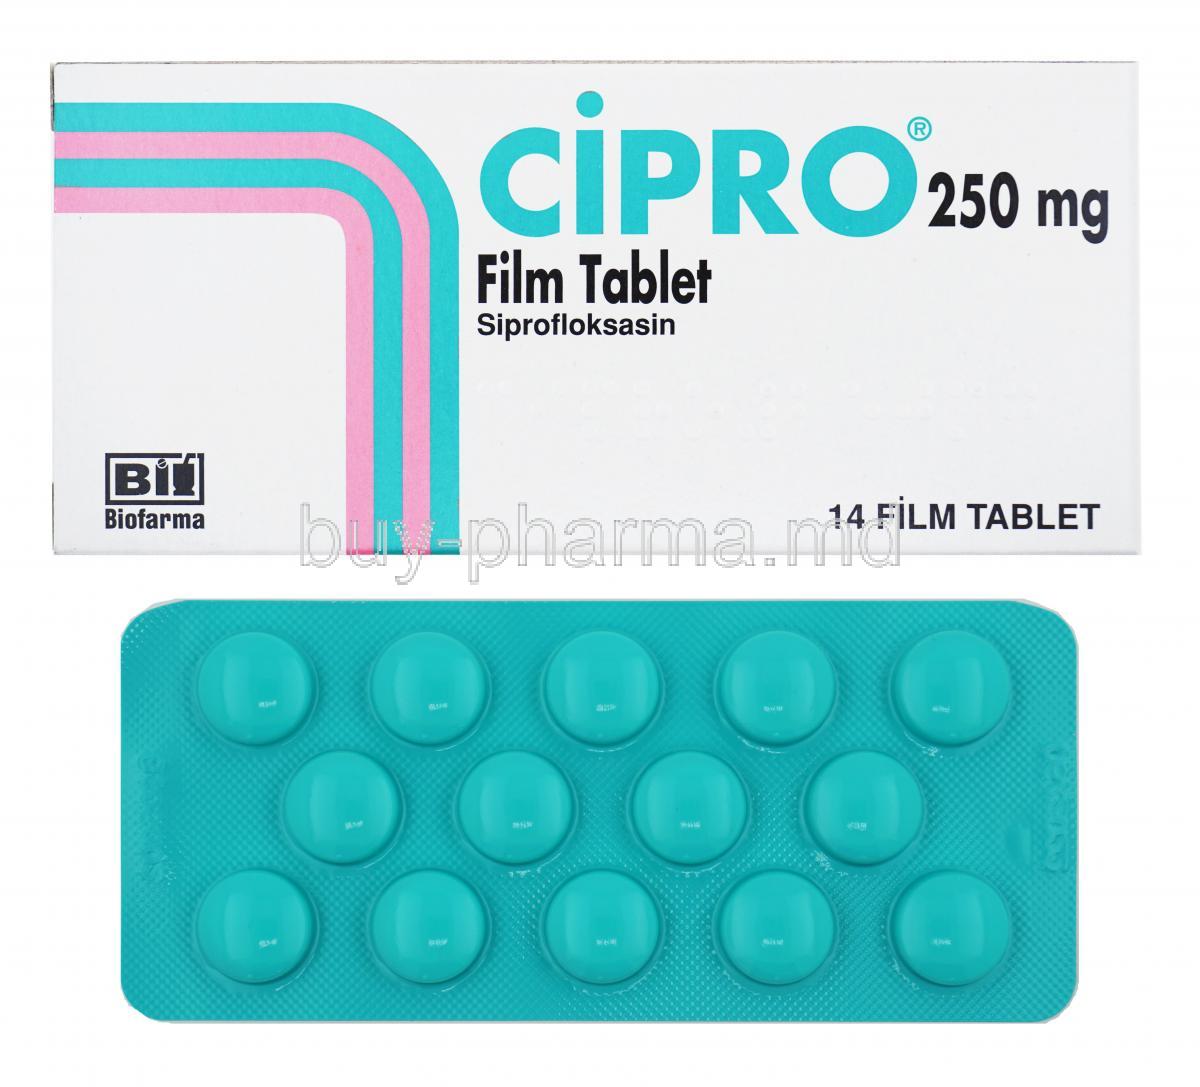 Cipro, Ciprofloxacin 250mg box and tablet